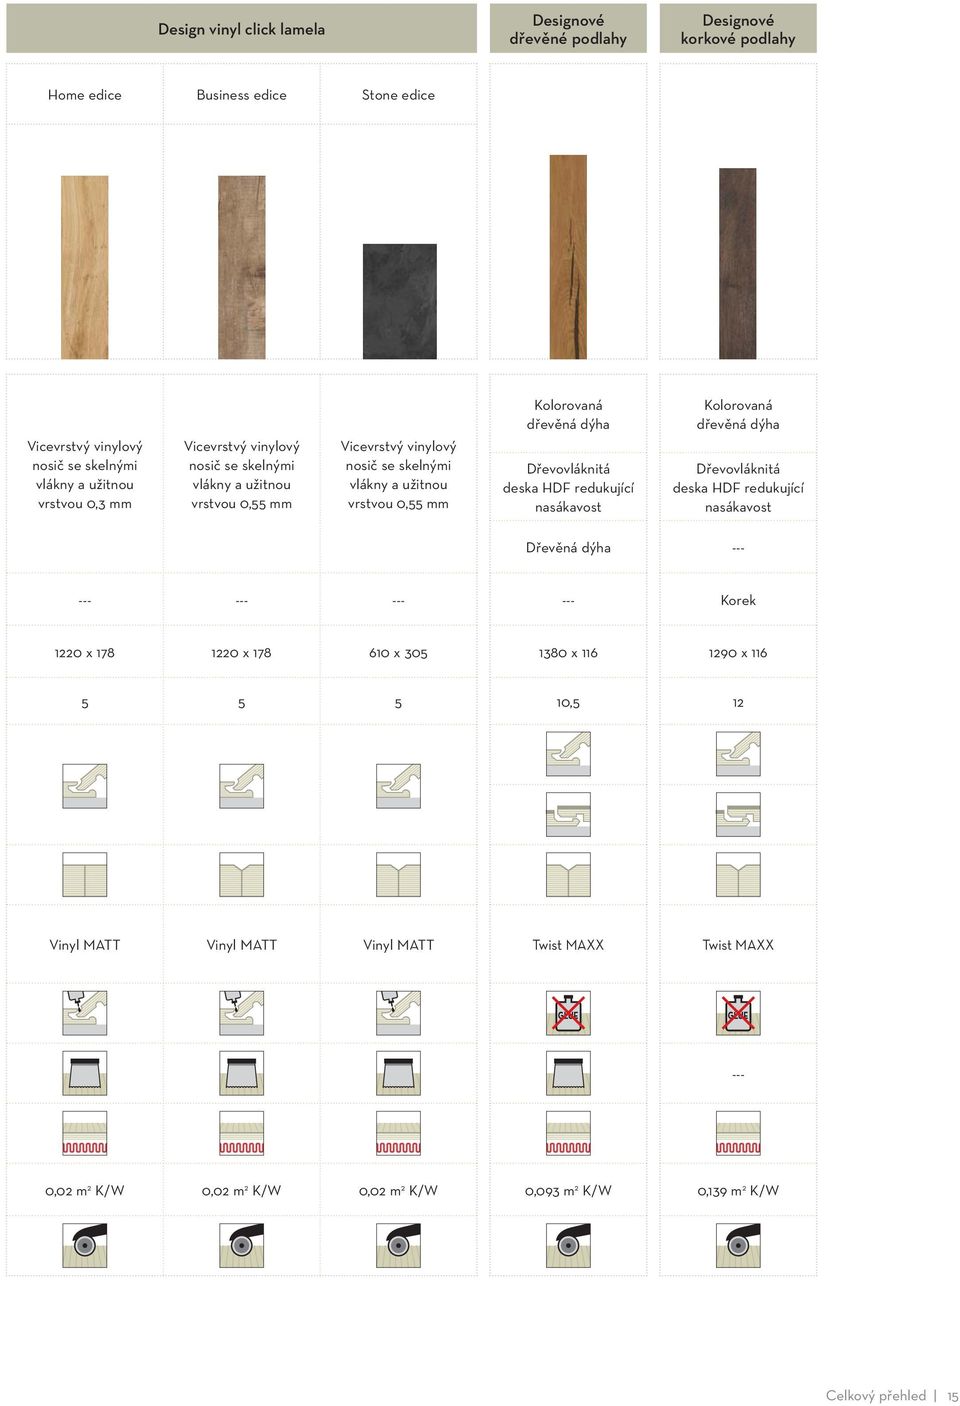 Dřevovláknitá deska HDF redukující nasákavost Kolorovaná dřevěná dýha Dřevovláknitá deska HDF redukující nasákavost Dřevěná dýha --- --- --- --- --- Korek 1220 x 178 1220 x 178